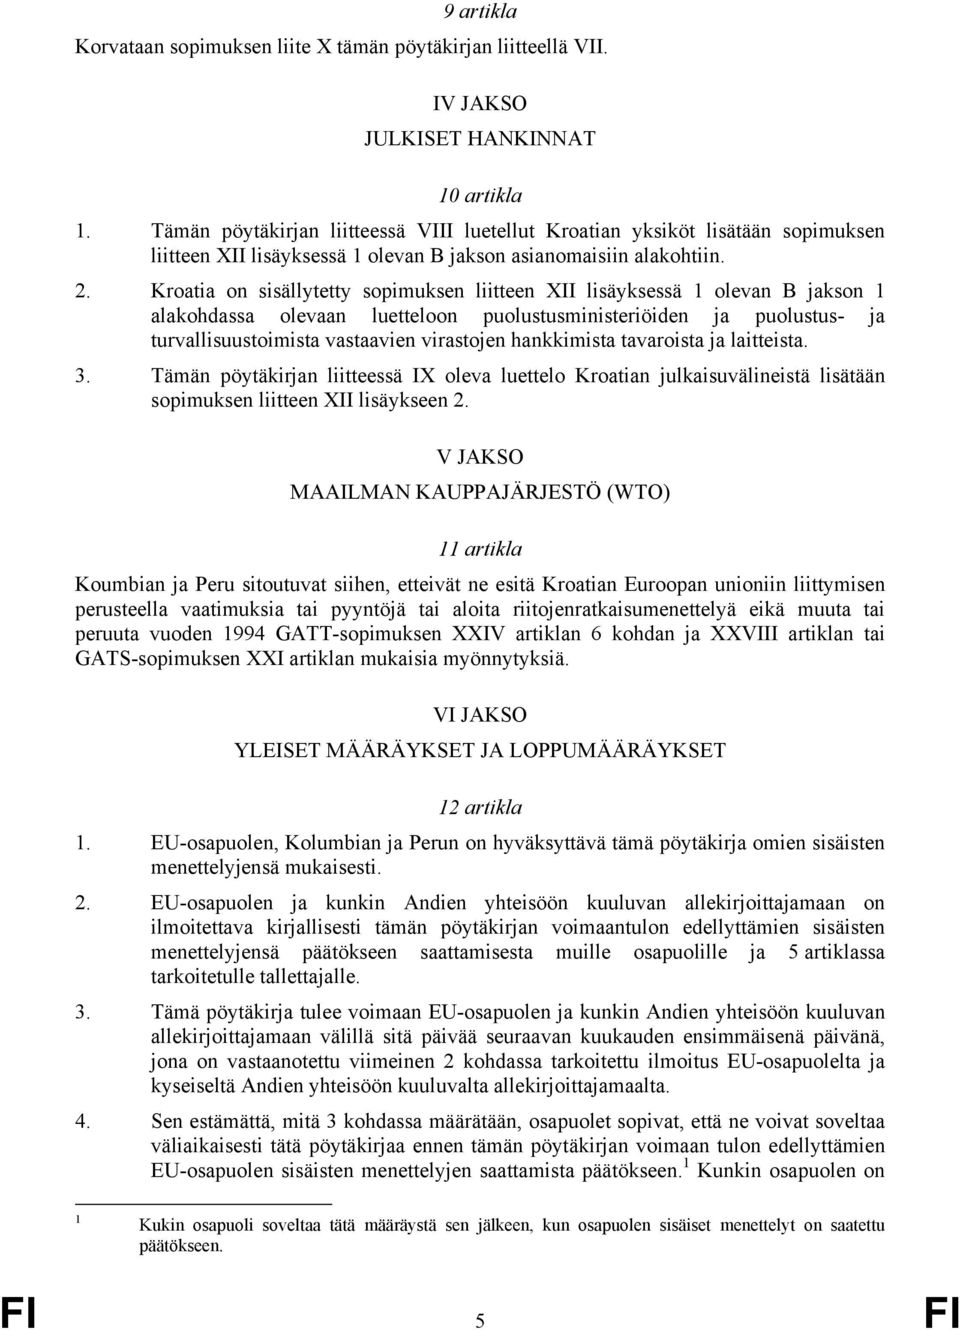 Kroatia on sisällytetty sopimuksen liitteen XII lisäyksessä 1 olevan B jakson 1 alakohdassa olevaan luetteloon puolustusministeriöiden ja puolustus- ja turvallisuustoimista vastaavien virastojen